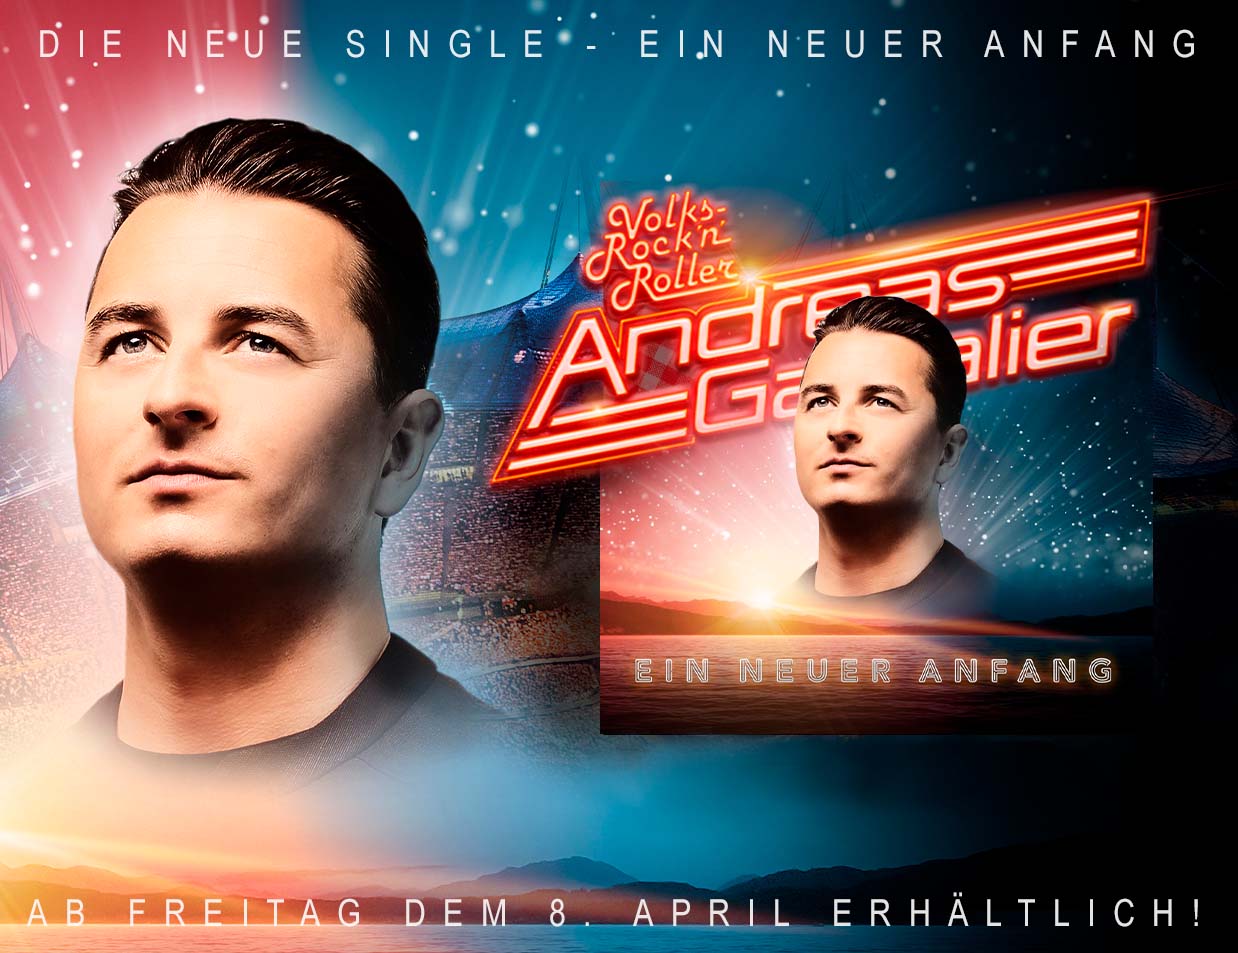 Andreas Gabalier – die neue Single: „Ein neuer Anfang“ ist ab Freitag überall erhältlich!